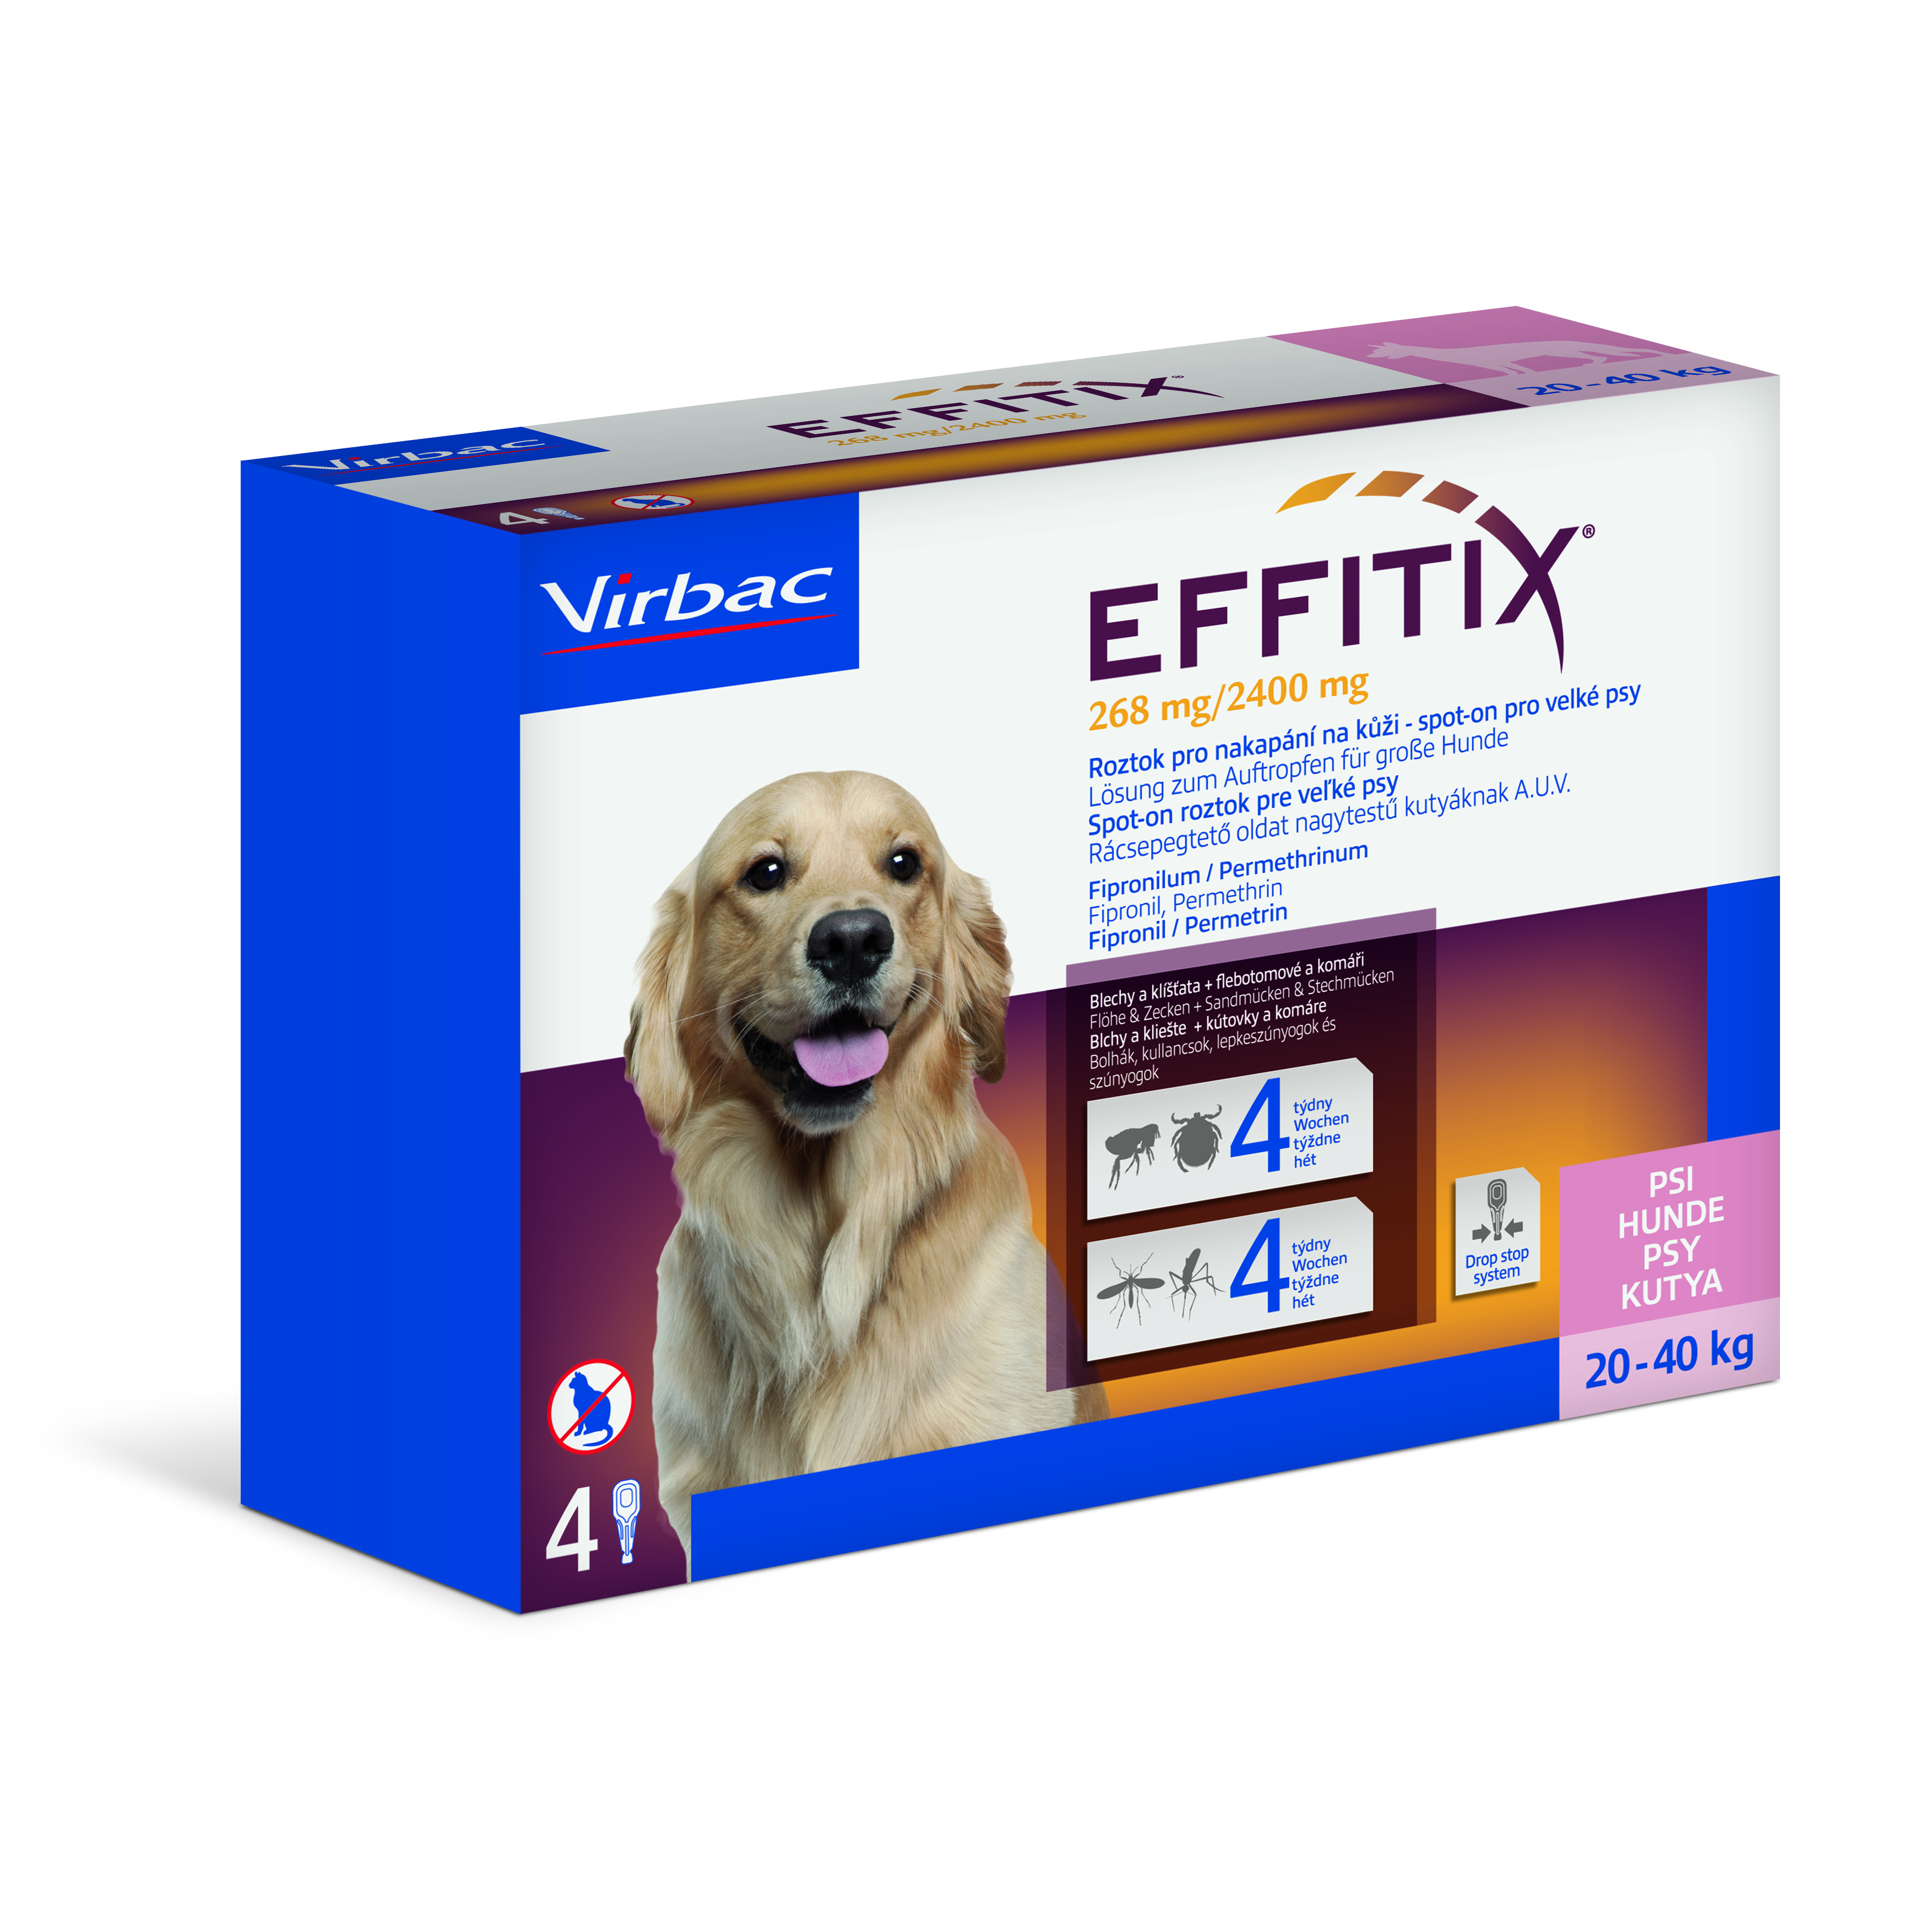 Effitix 268 mg/2400 mg, roztok pro nakapání na kůži - spot-on pro velké psy 4 x 4,4 ml